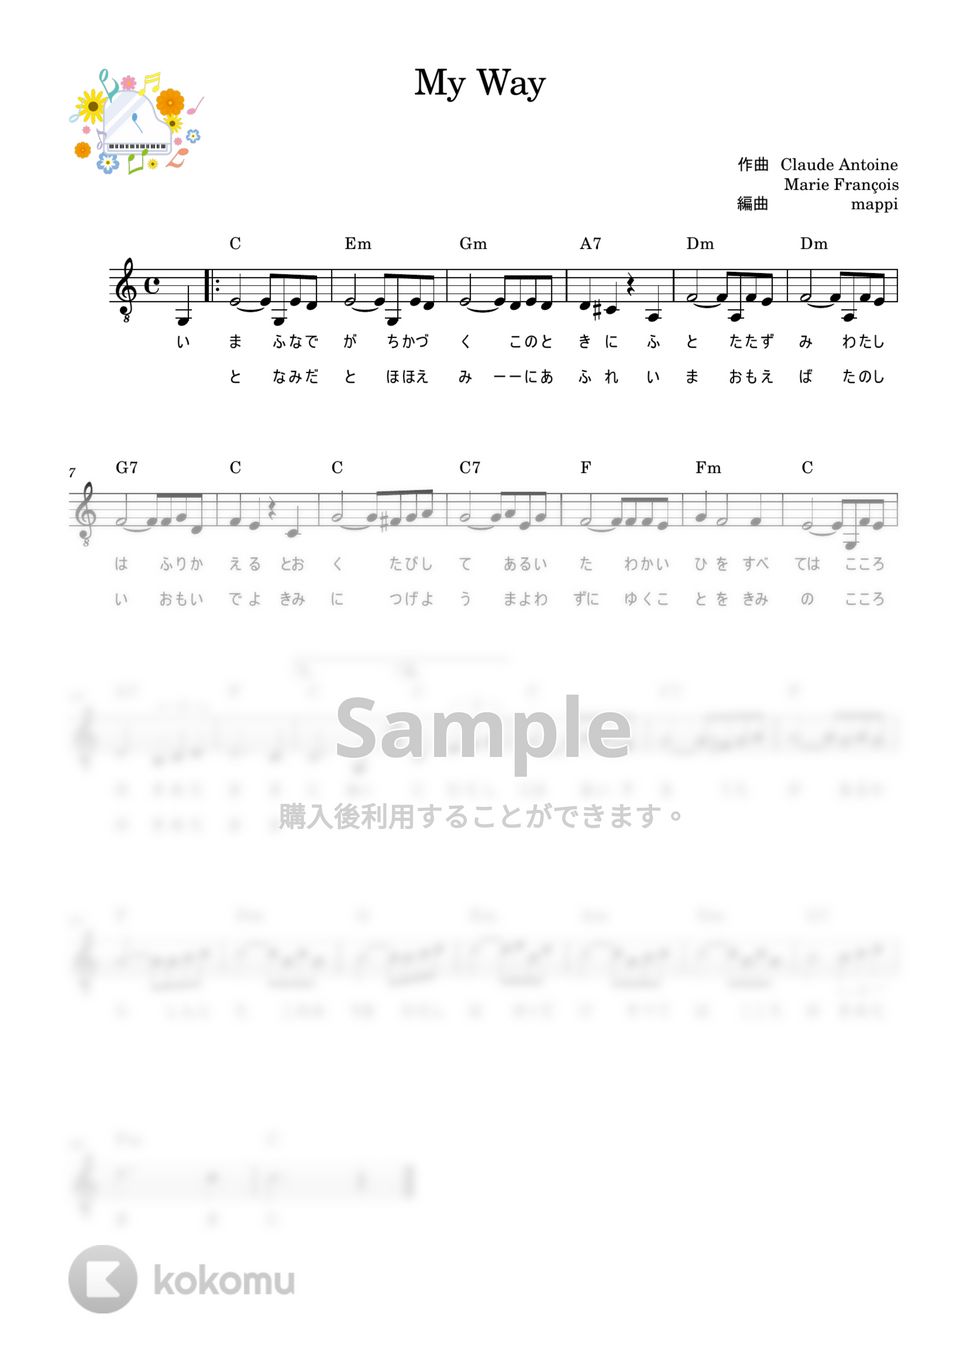 フランク・シナトラ - My Way (メロディとコードで弾き語ろう) by pup-mappi